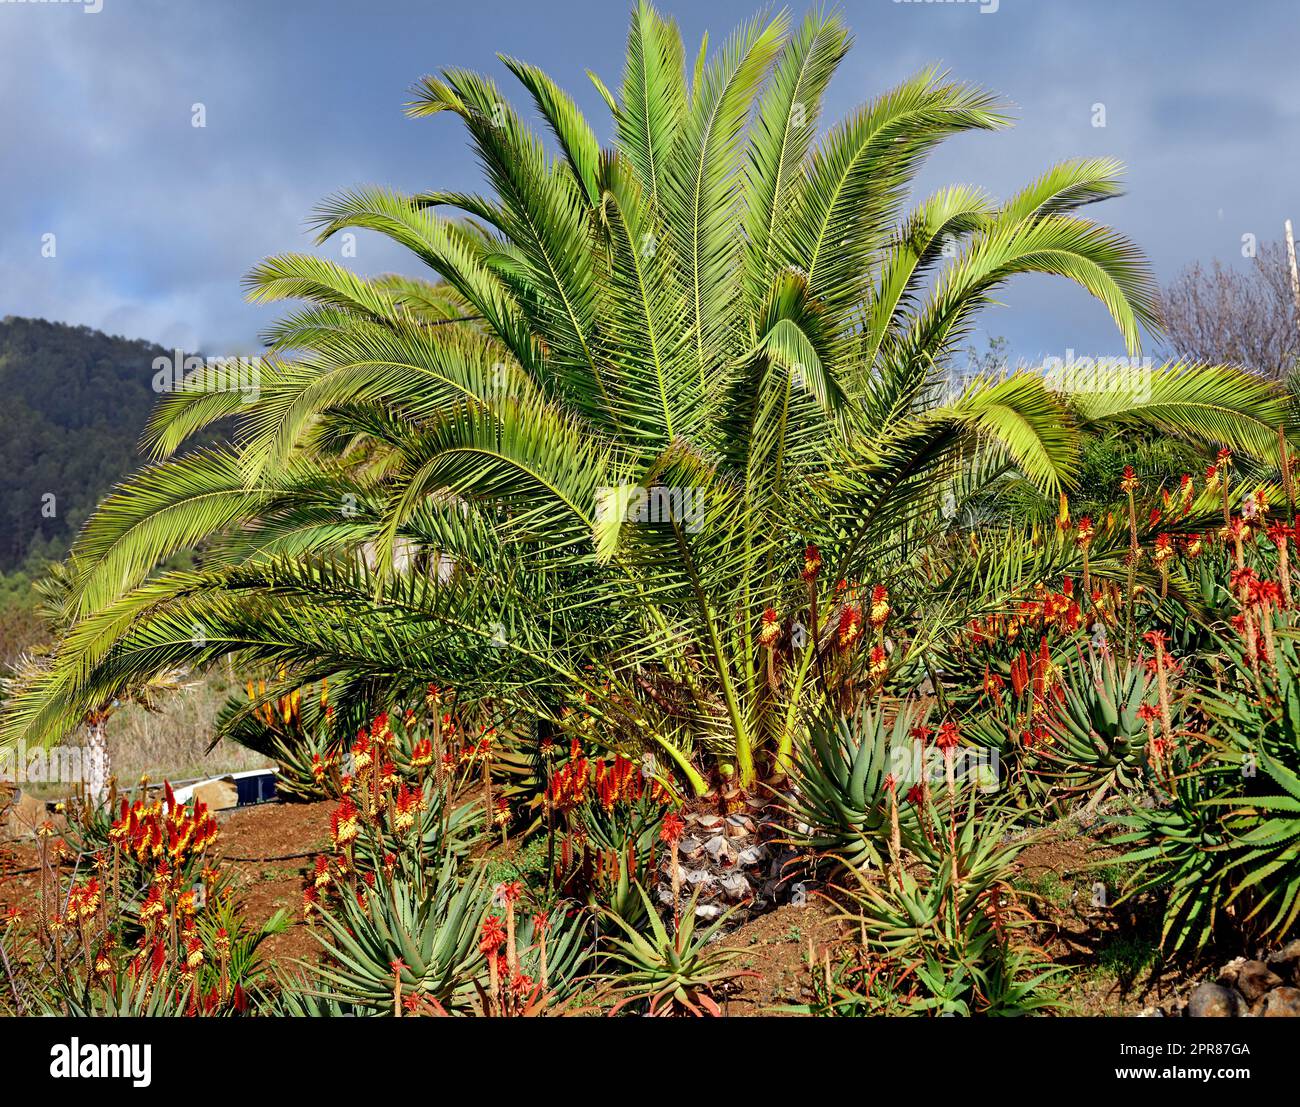 Vivace orticoltura tropicale di palme e piante di aloe vera a la Palma, Isole Canarie, Spagna. Fioritura, fioritura e fioritura di piante succulente che crescono su un pendio collinare in una destinazione remota Foto Stock